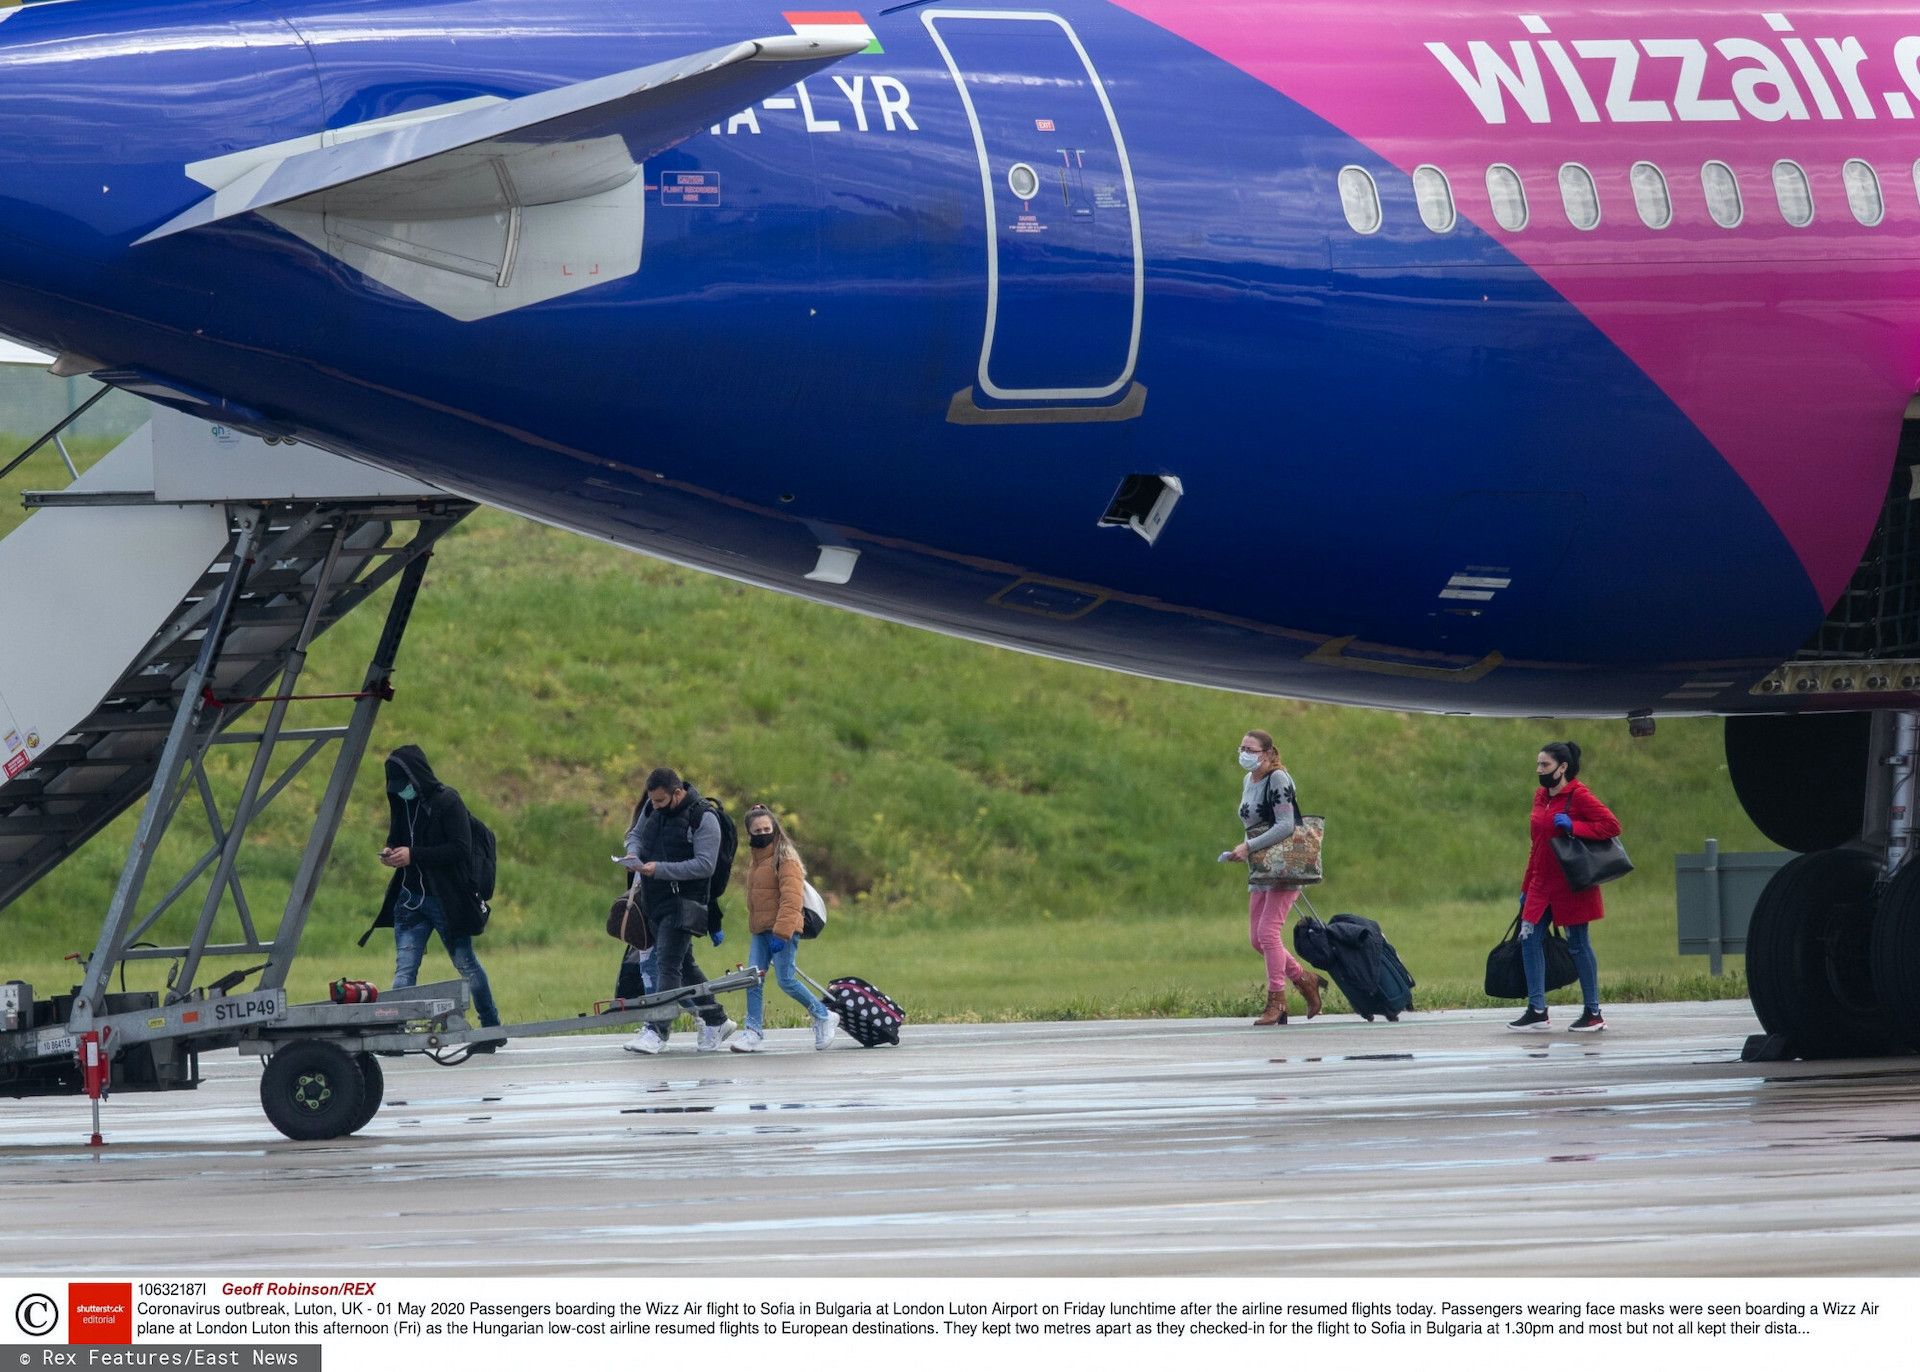 Samolot Wizz Air lecący do Warszawy lądował awaryjnie chwilę po starcie